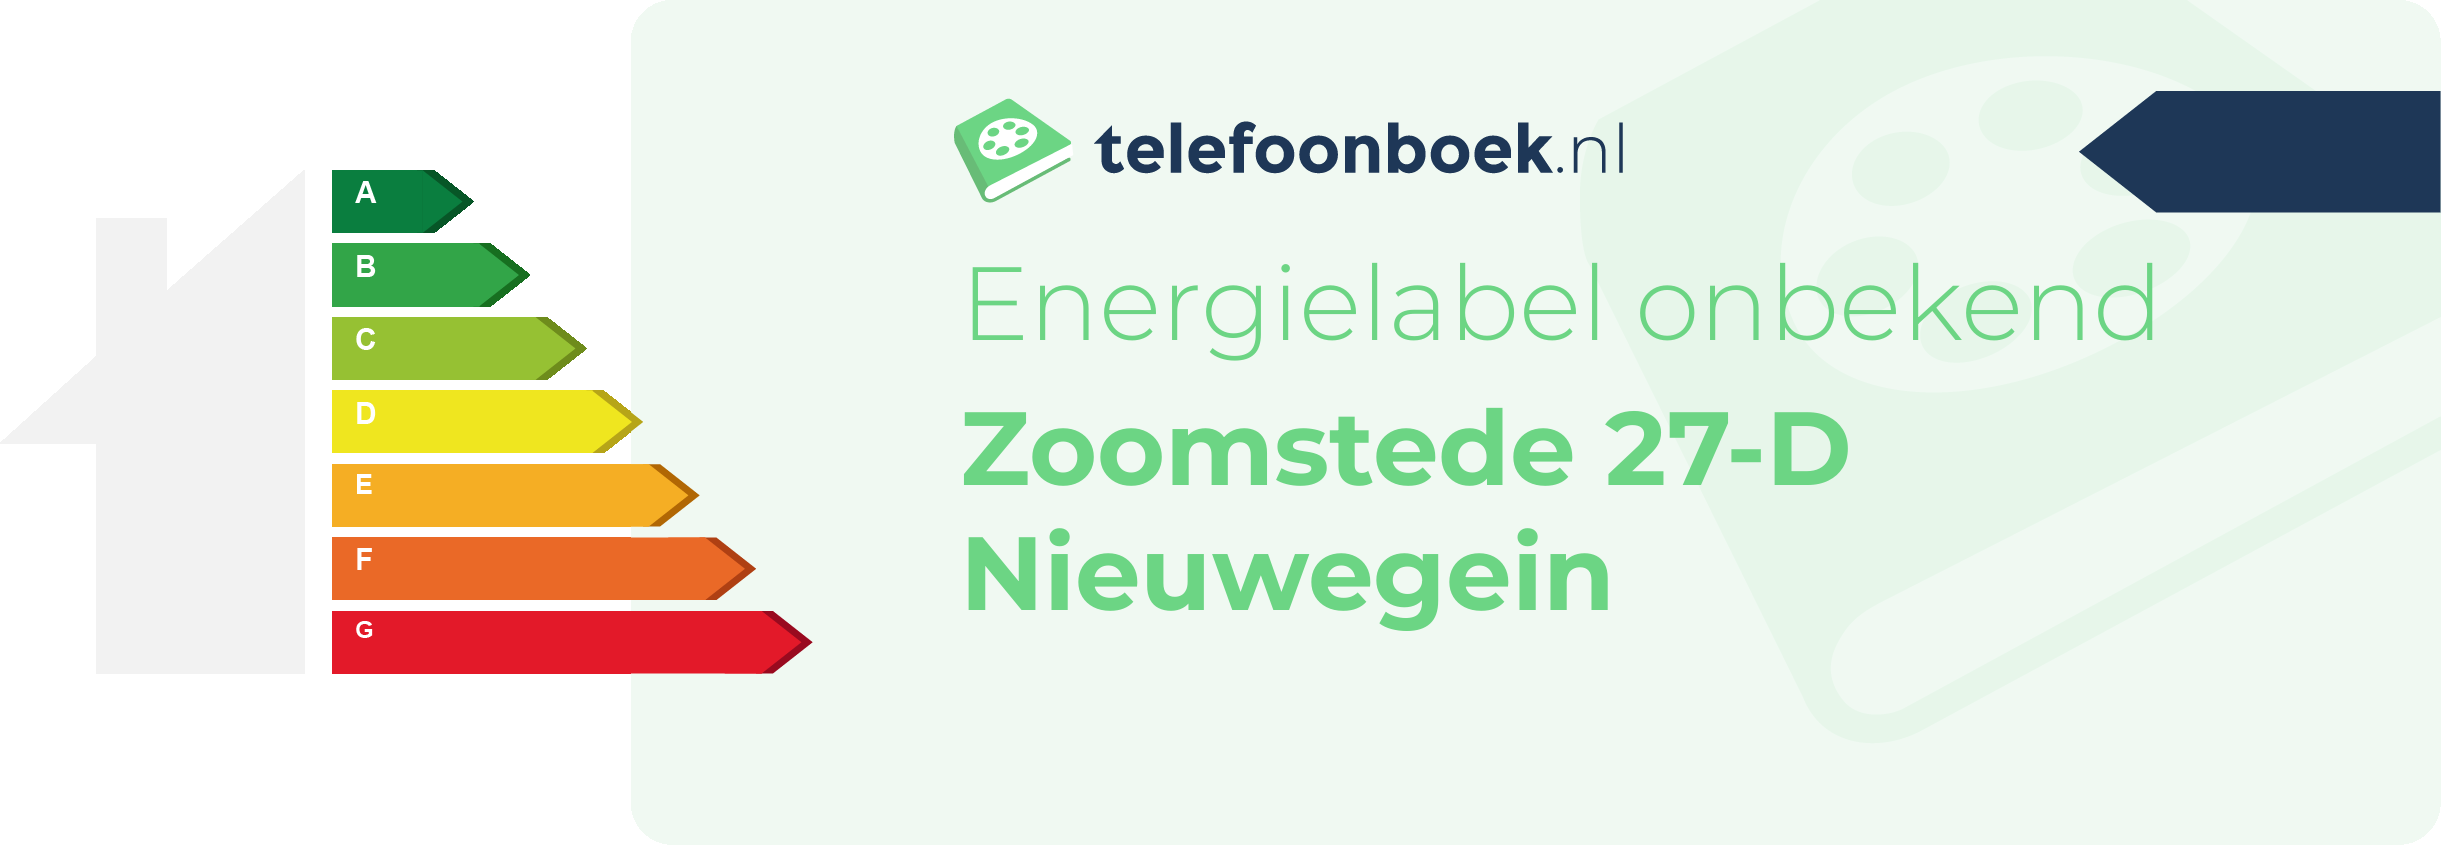 Energielabel Zoomstede 27-D Nieuwegein